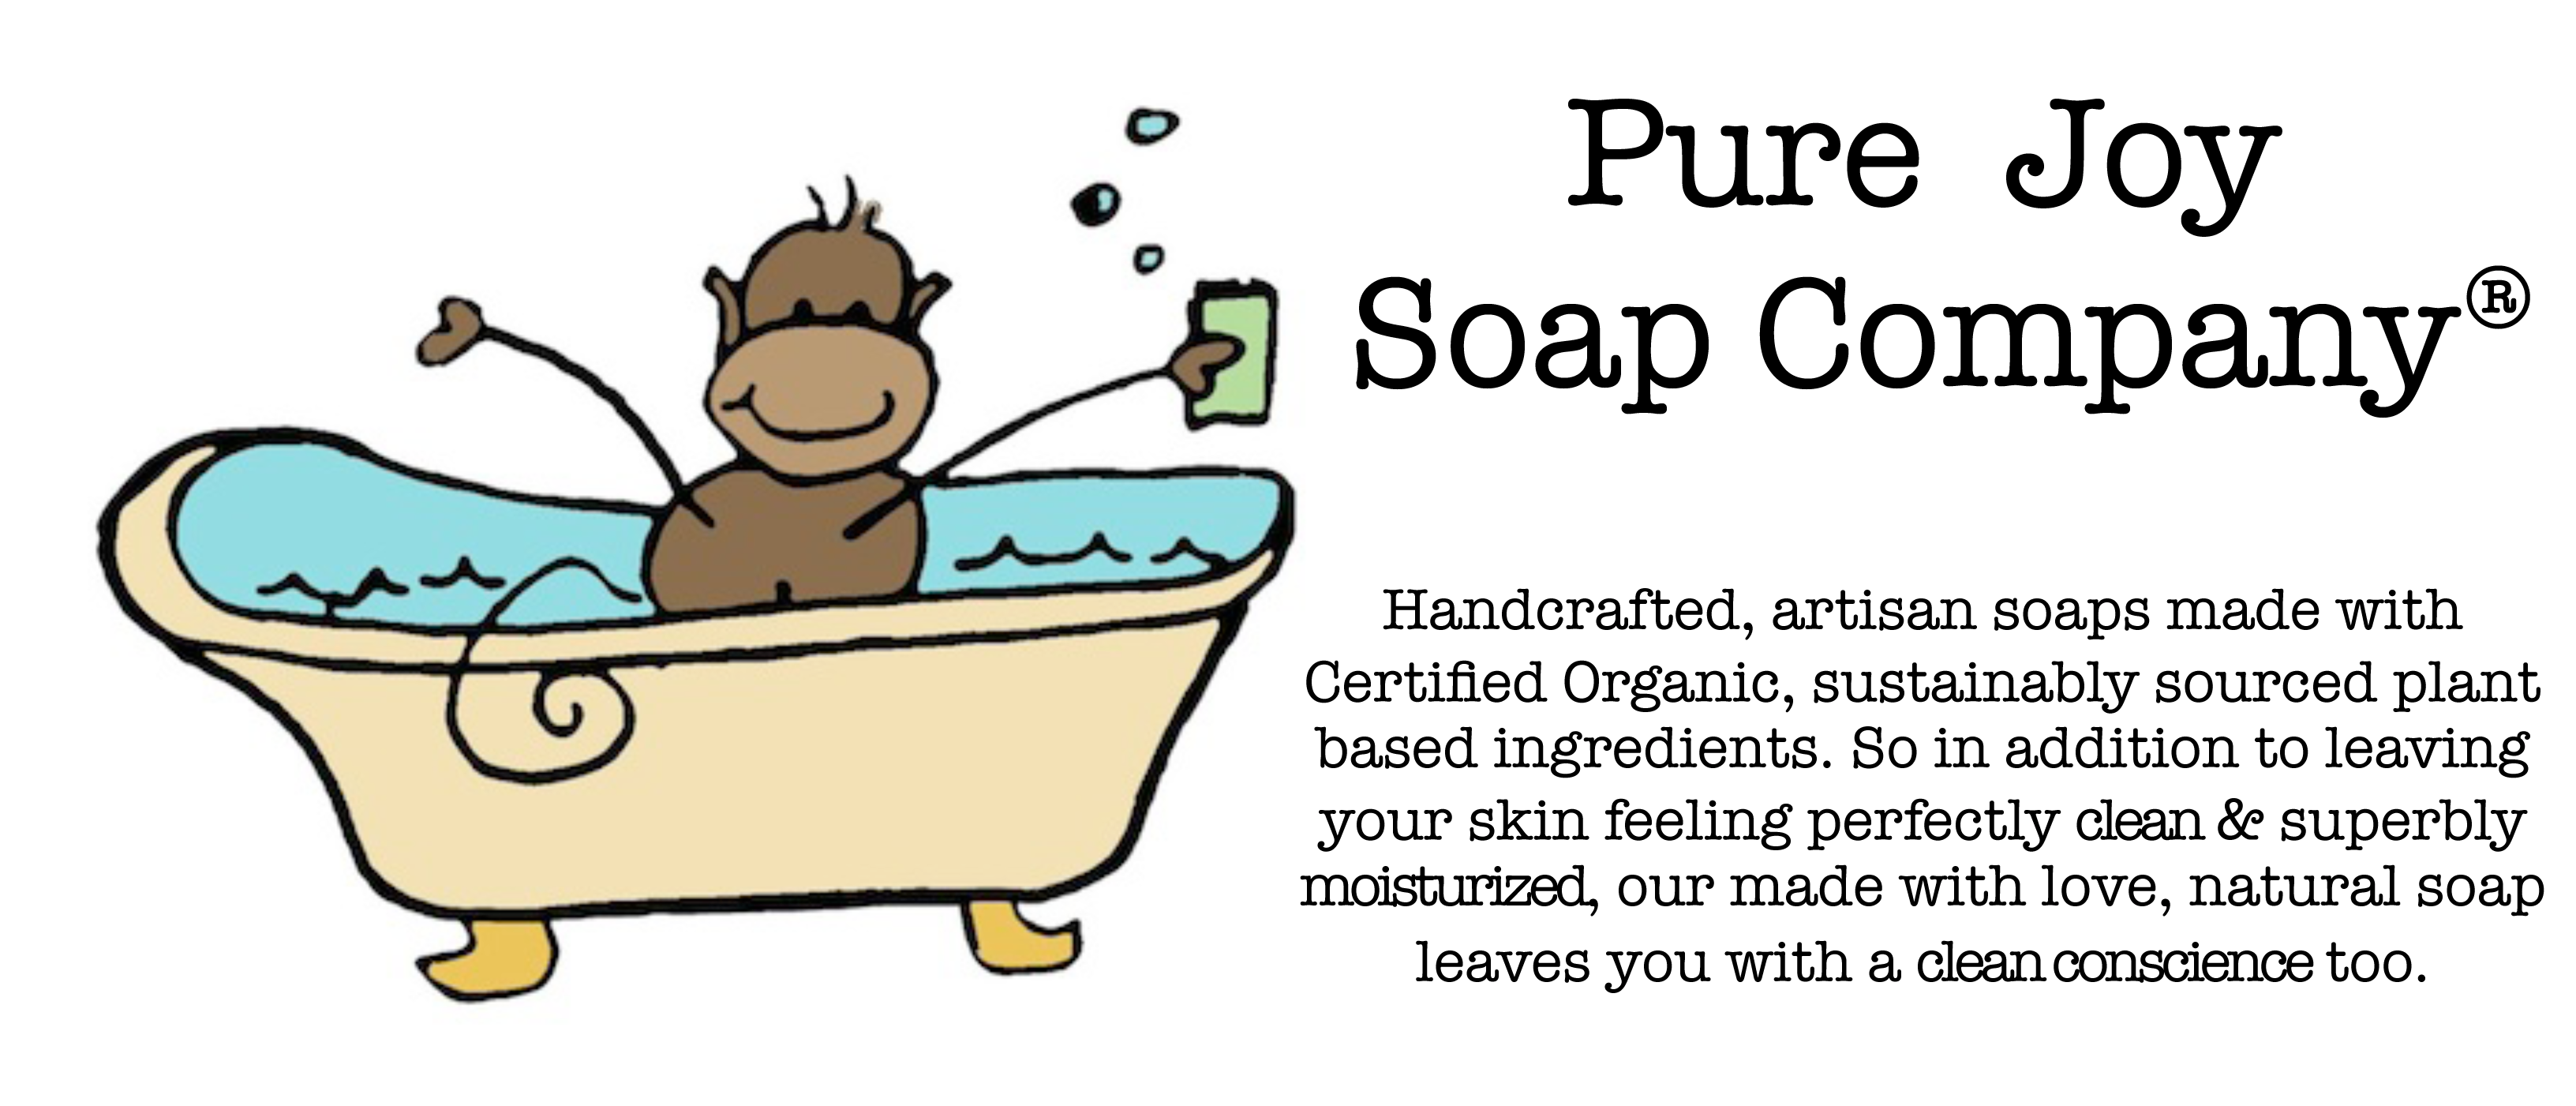 Pure Joy Soap Company